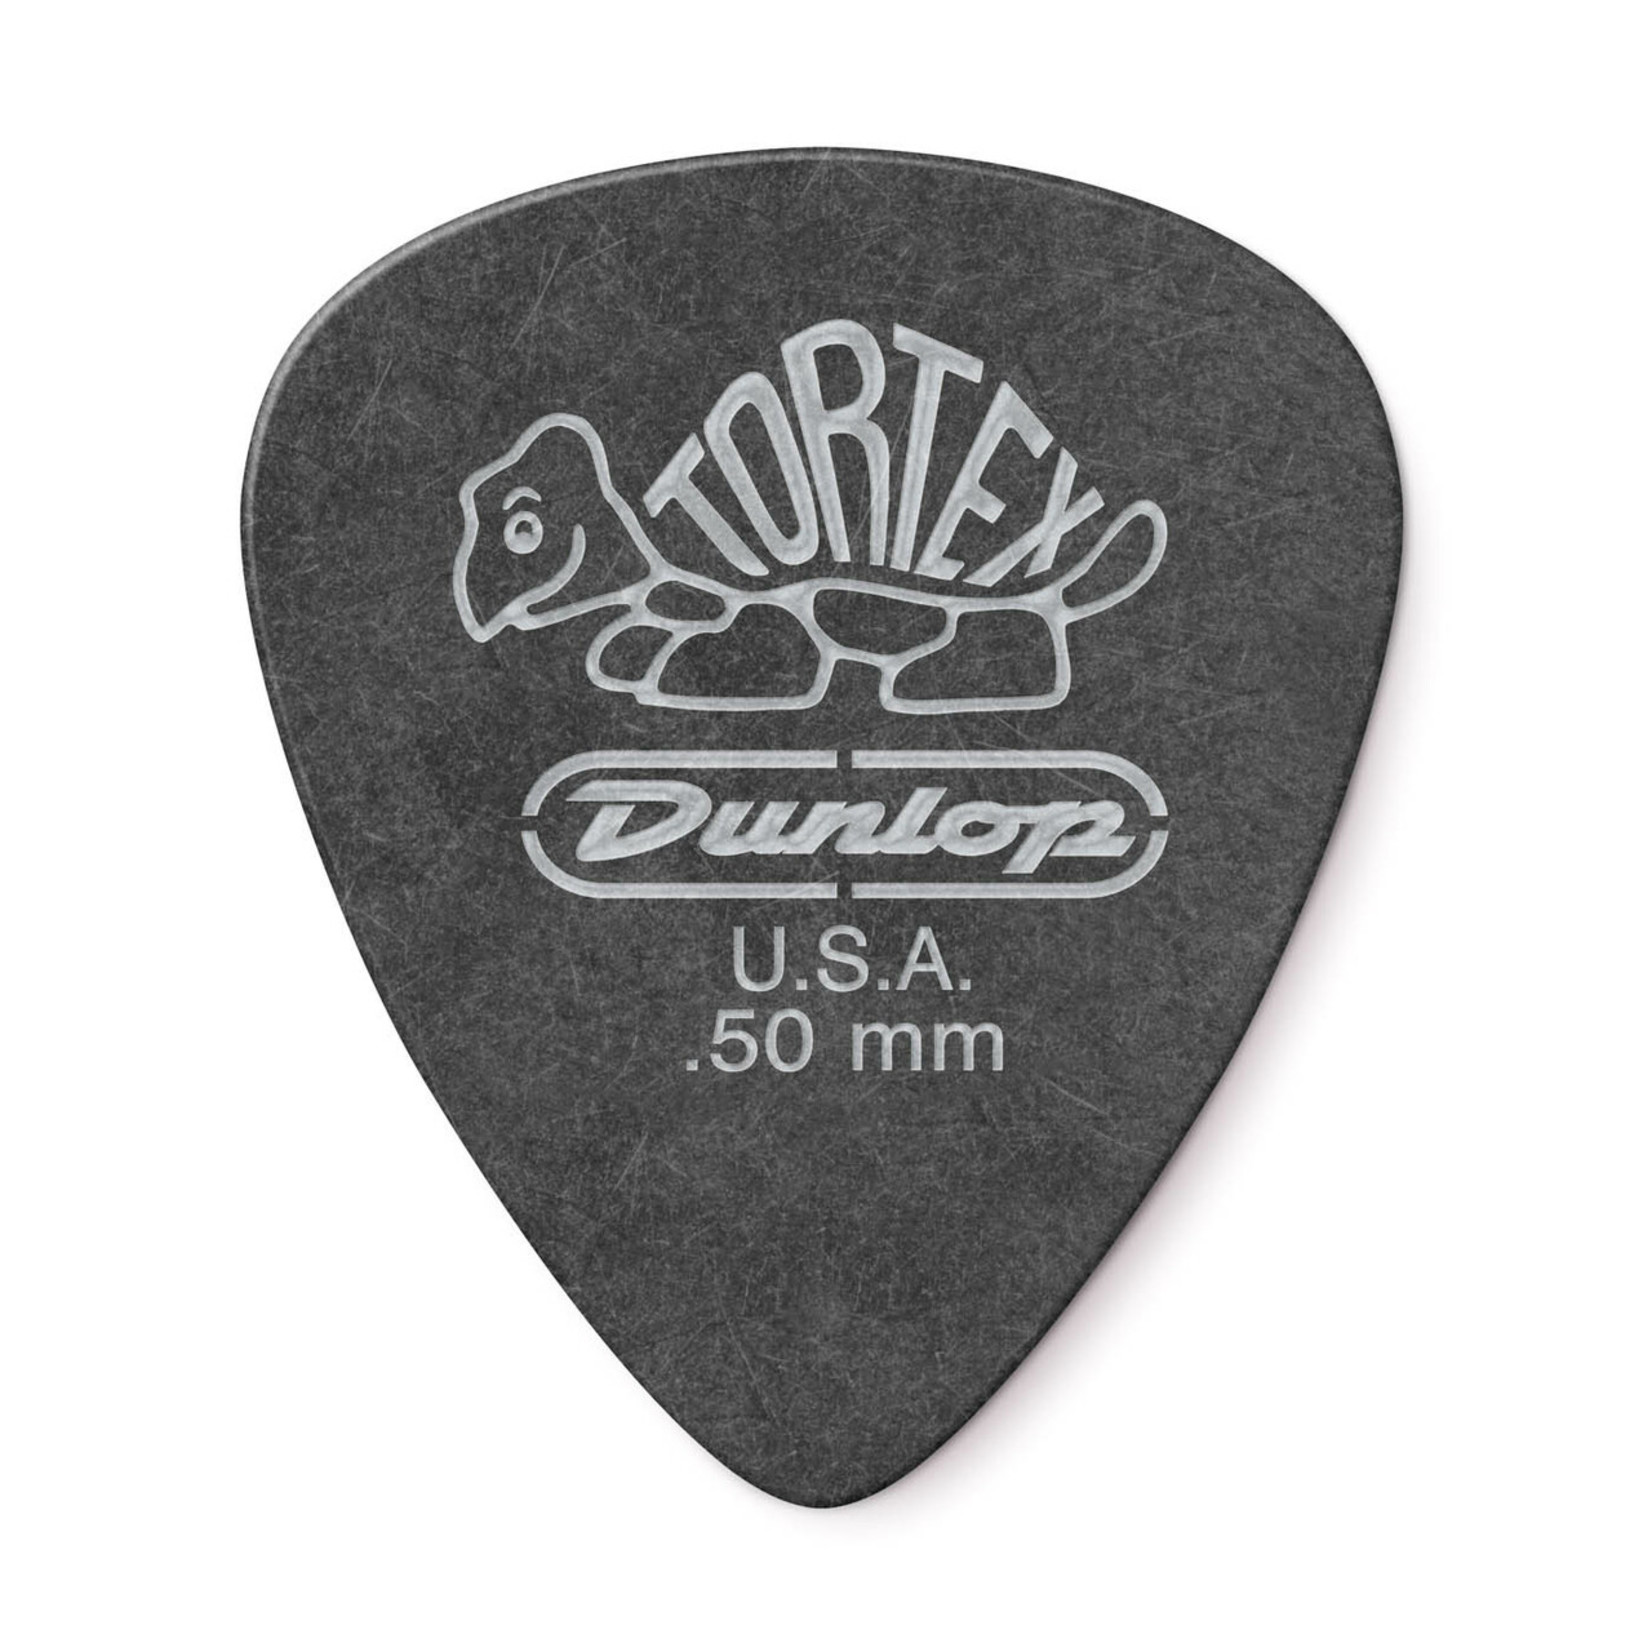 Dunlop Dunlop Tortex Pitch Black Standard Picks (12-Pack), .50 mm